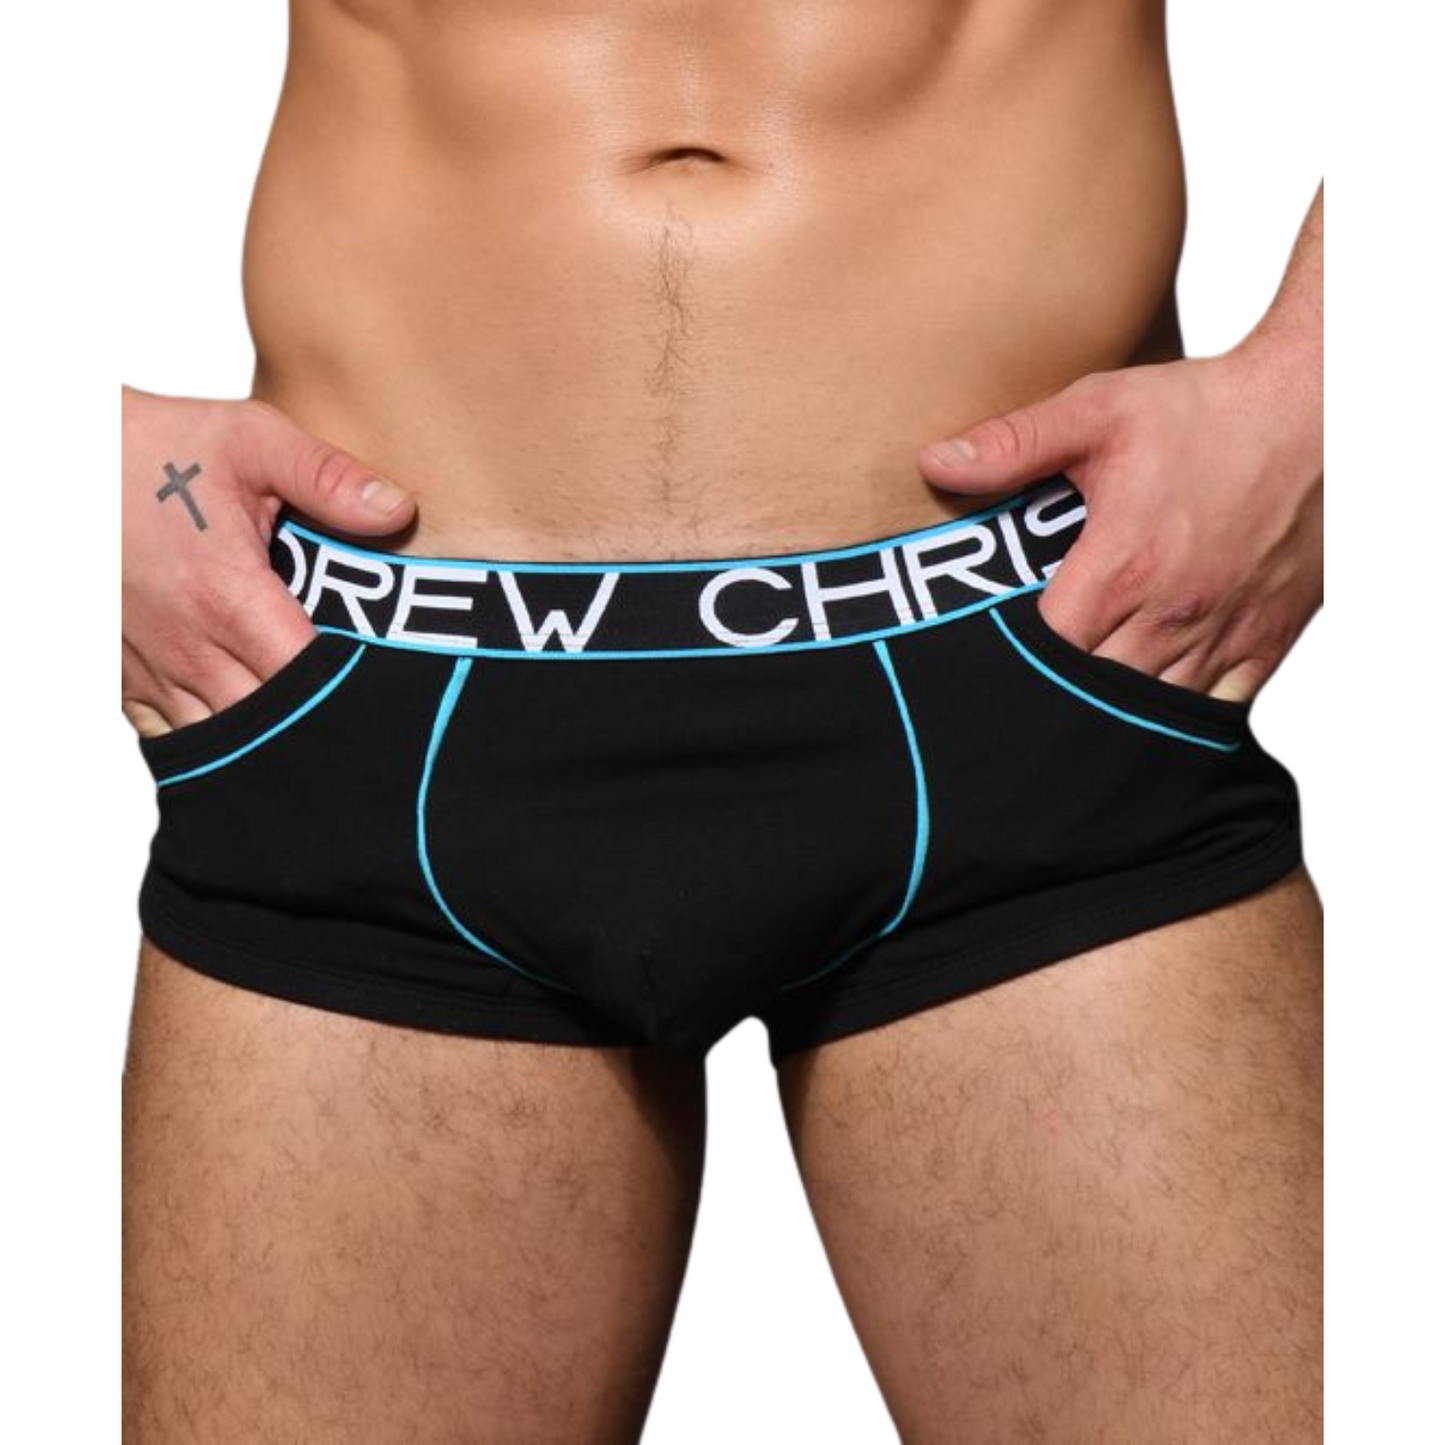 Hippe zwarte boxershort met zakken en lichtblauwe accenten. Ontworpen door Andrew Christian en te koop bij Flavourez.